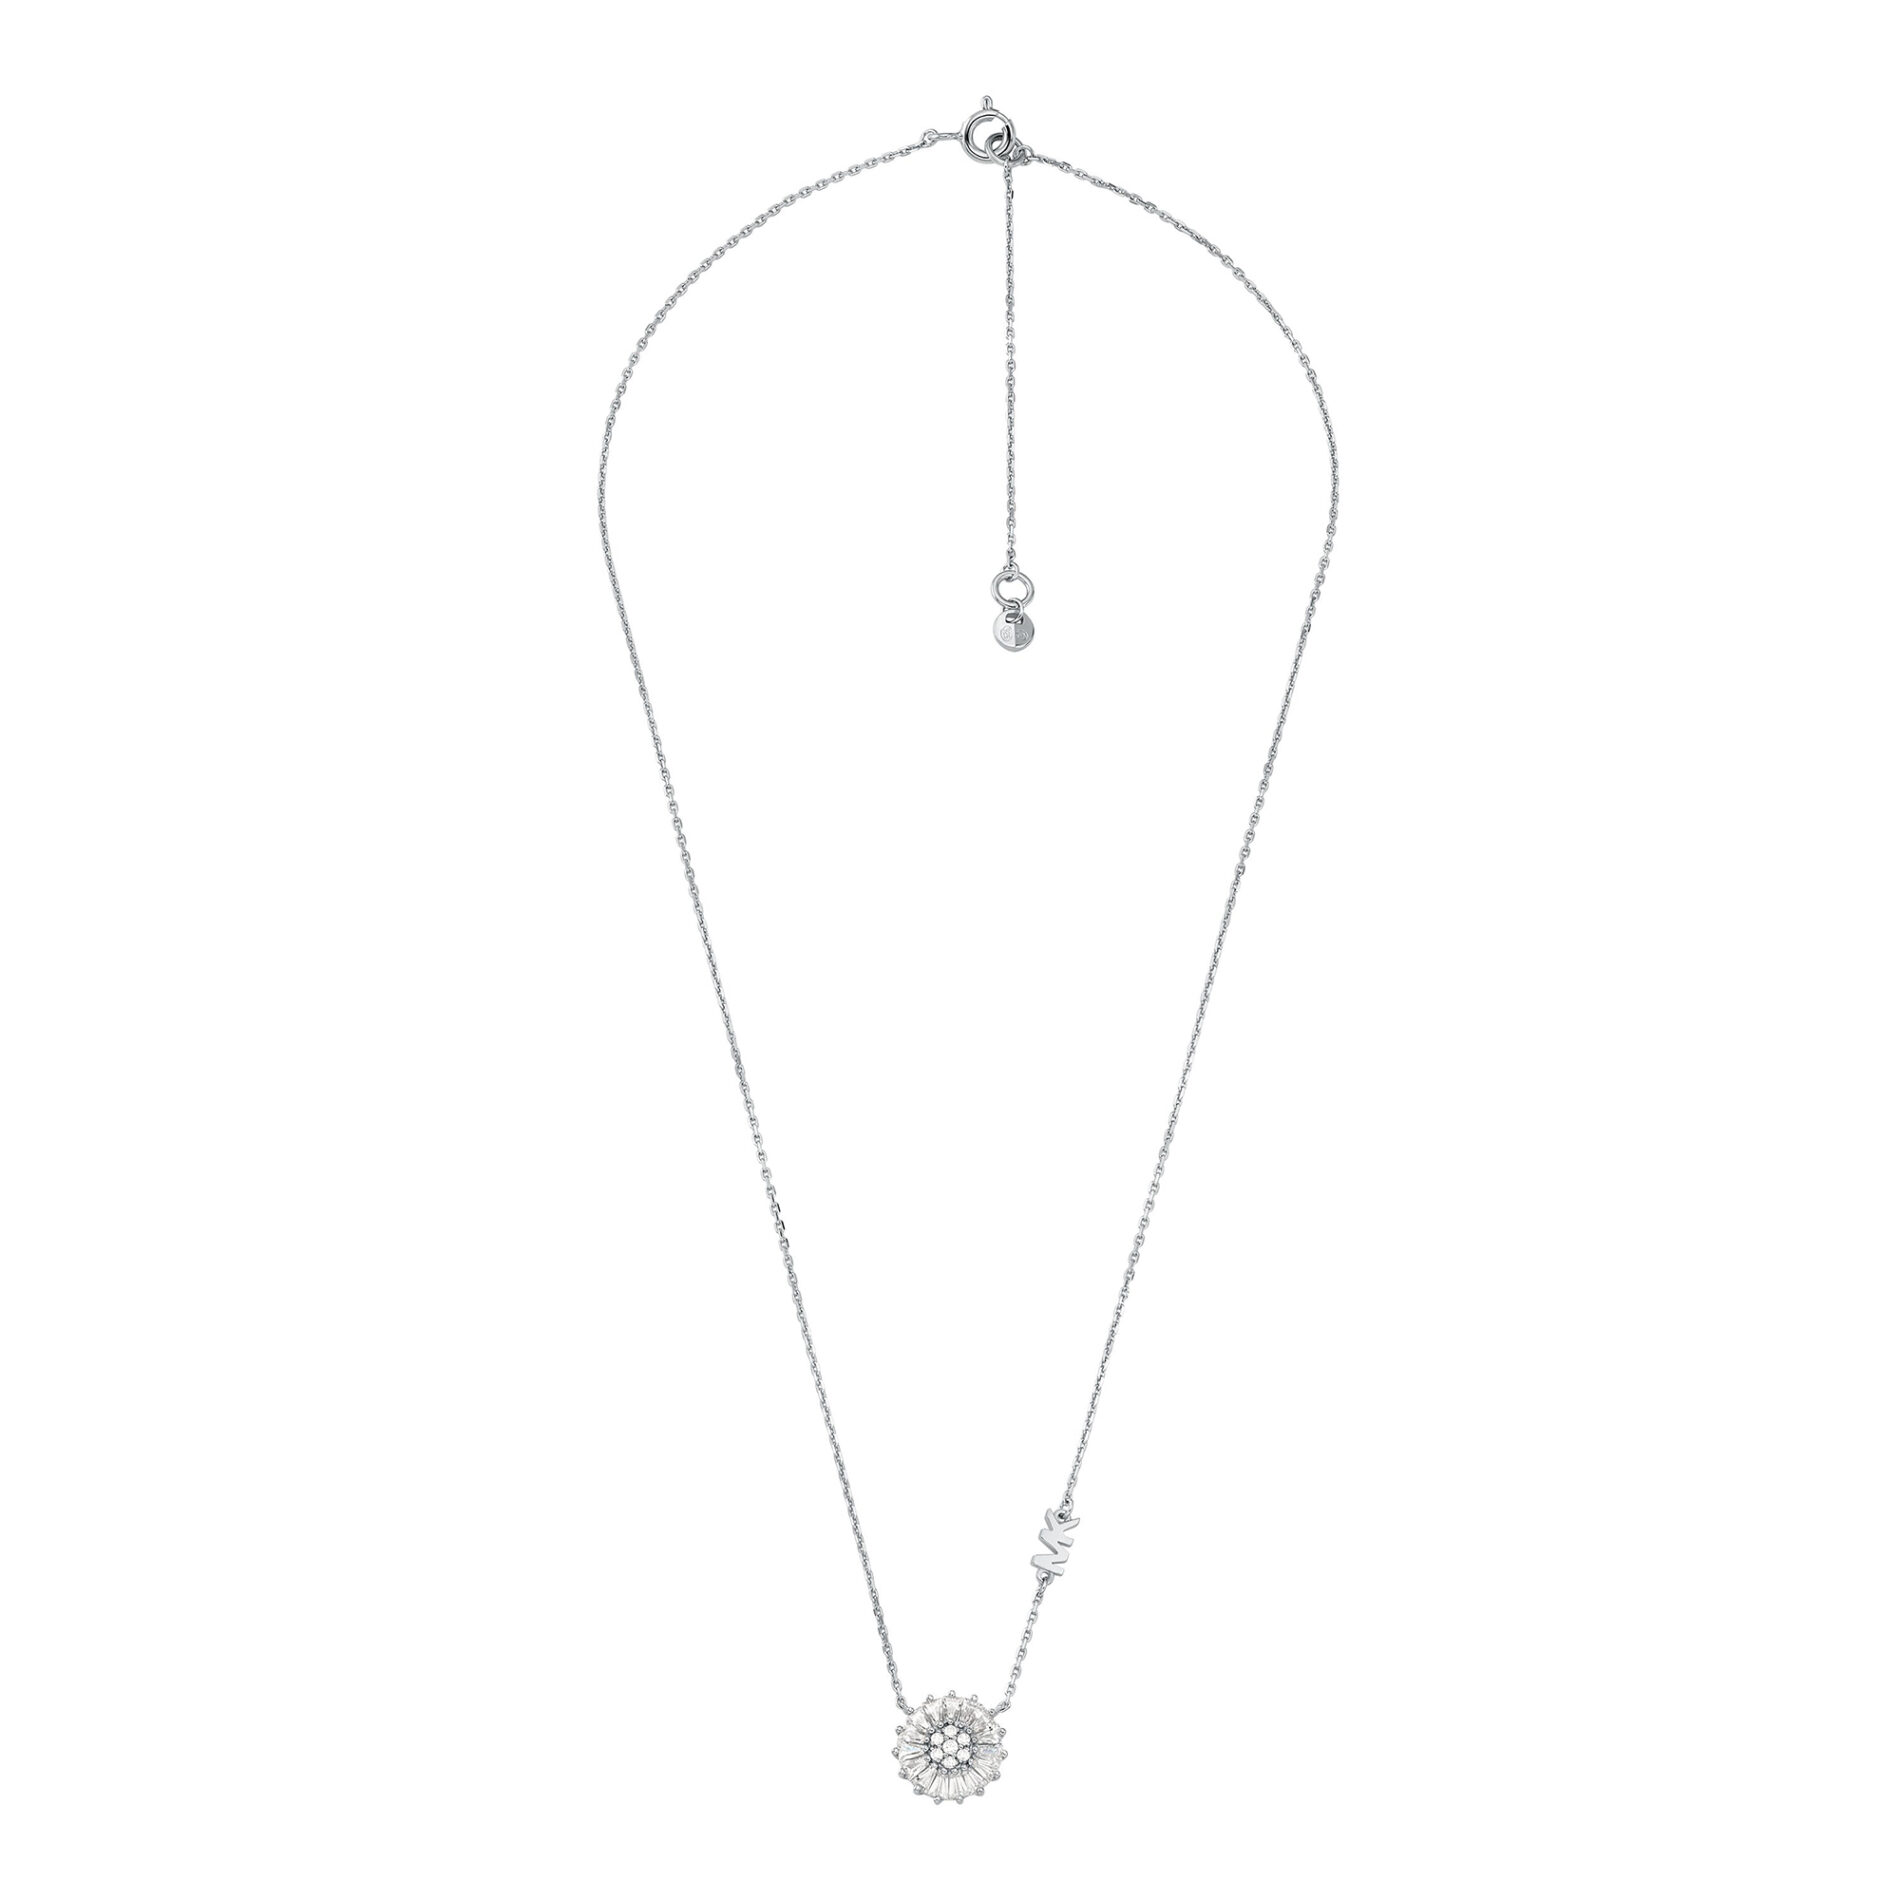 Michael Kors parure MKC1651SET - Gioielleria Casavola di Noci - collana in argento a forma di cuore con pavé